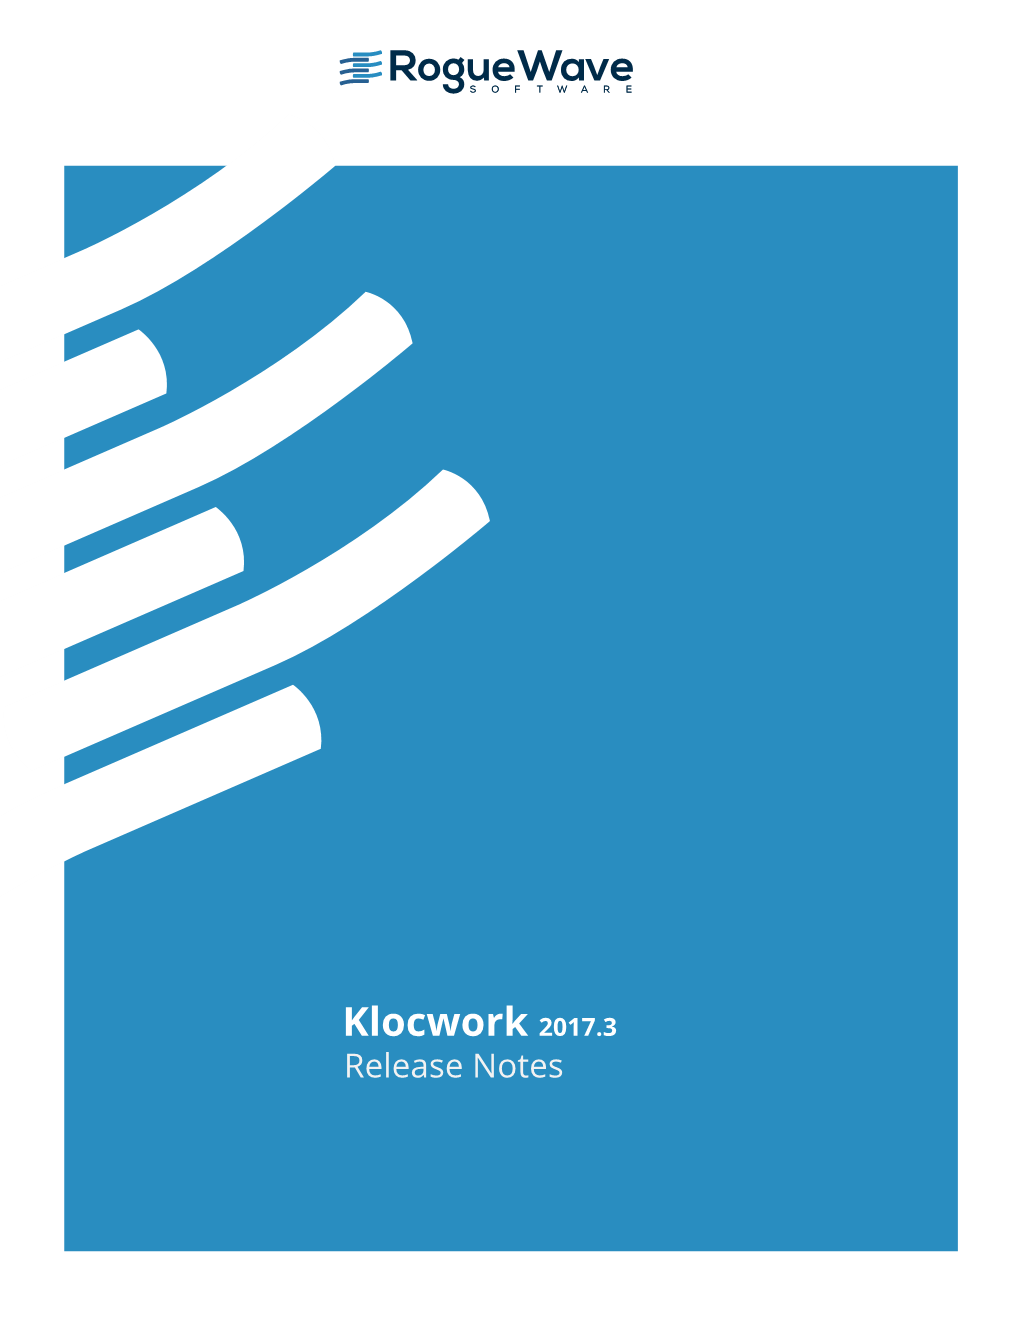 Klocwork 2017.3 Release Notes Contents